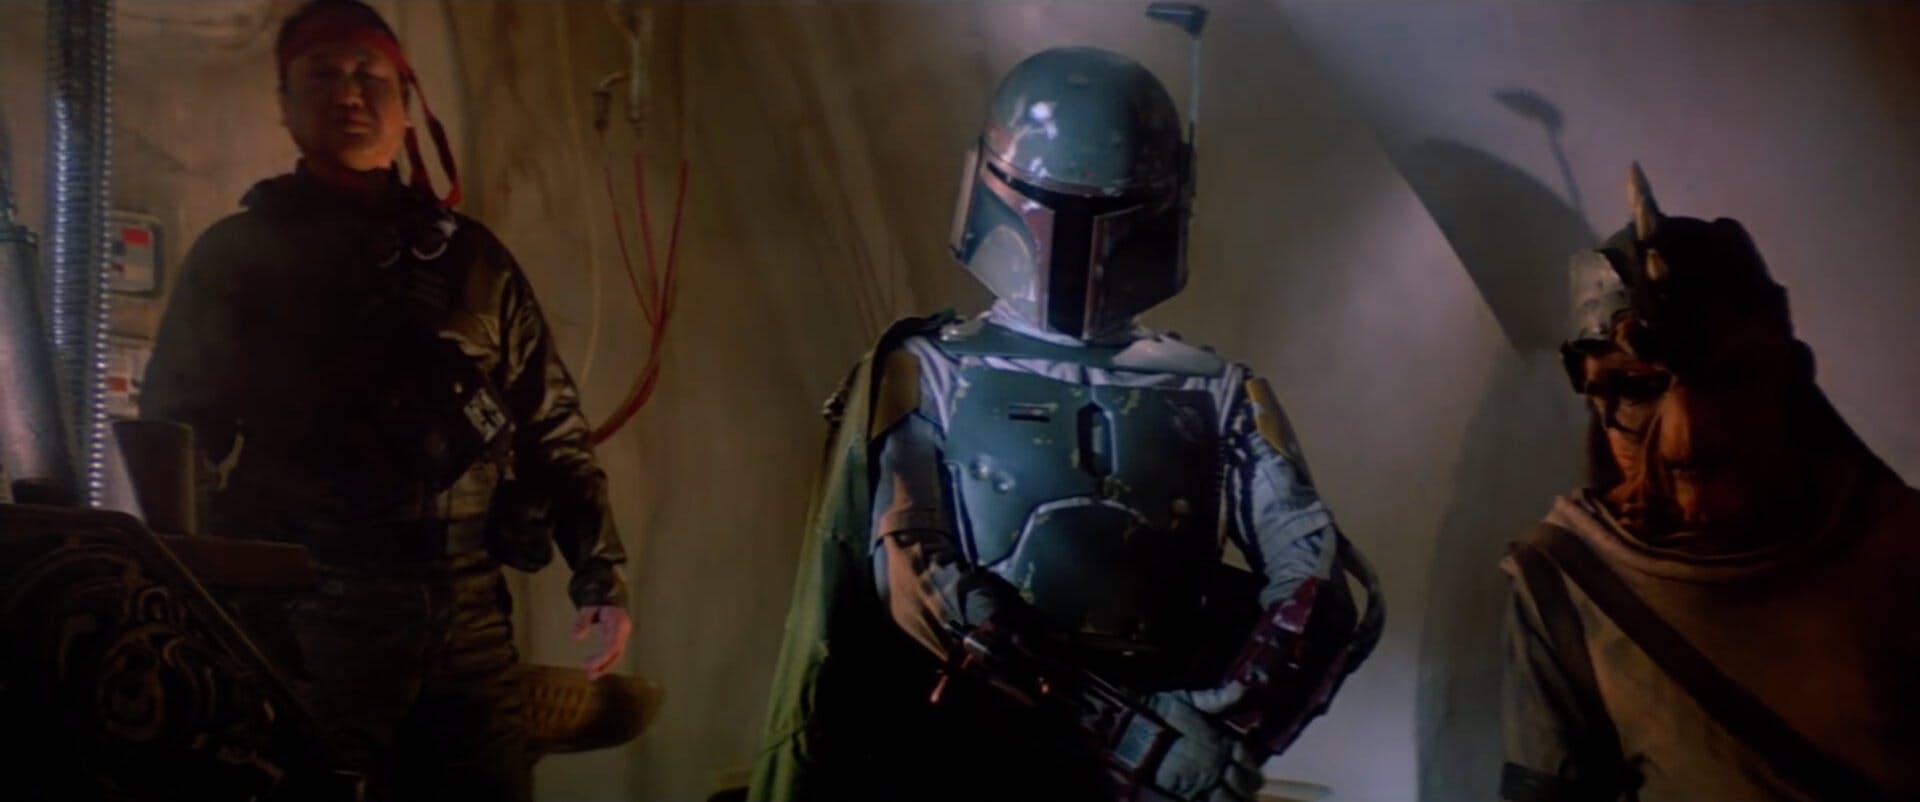 star wars movies ranking Return of the Jedi - Boba Fett